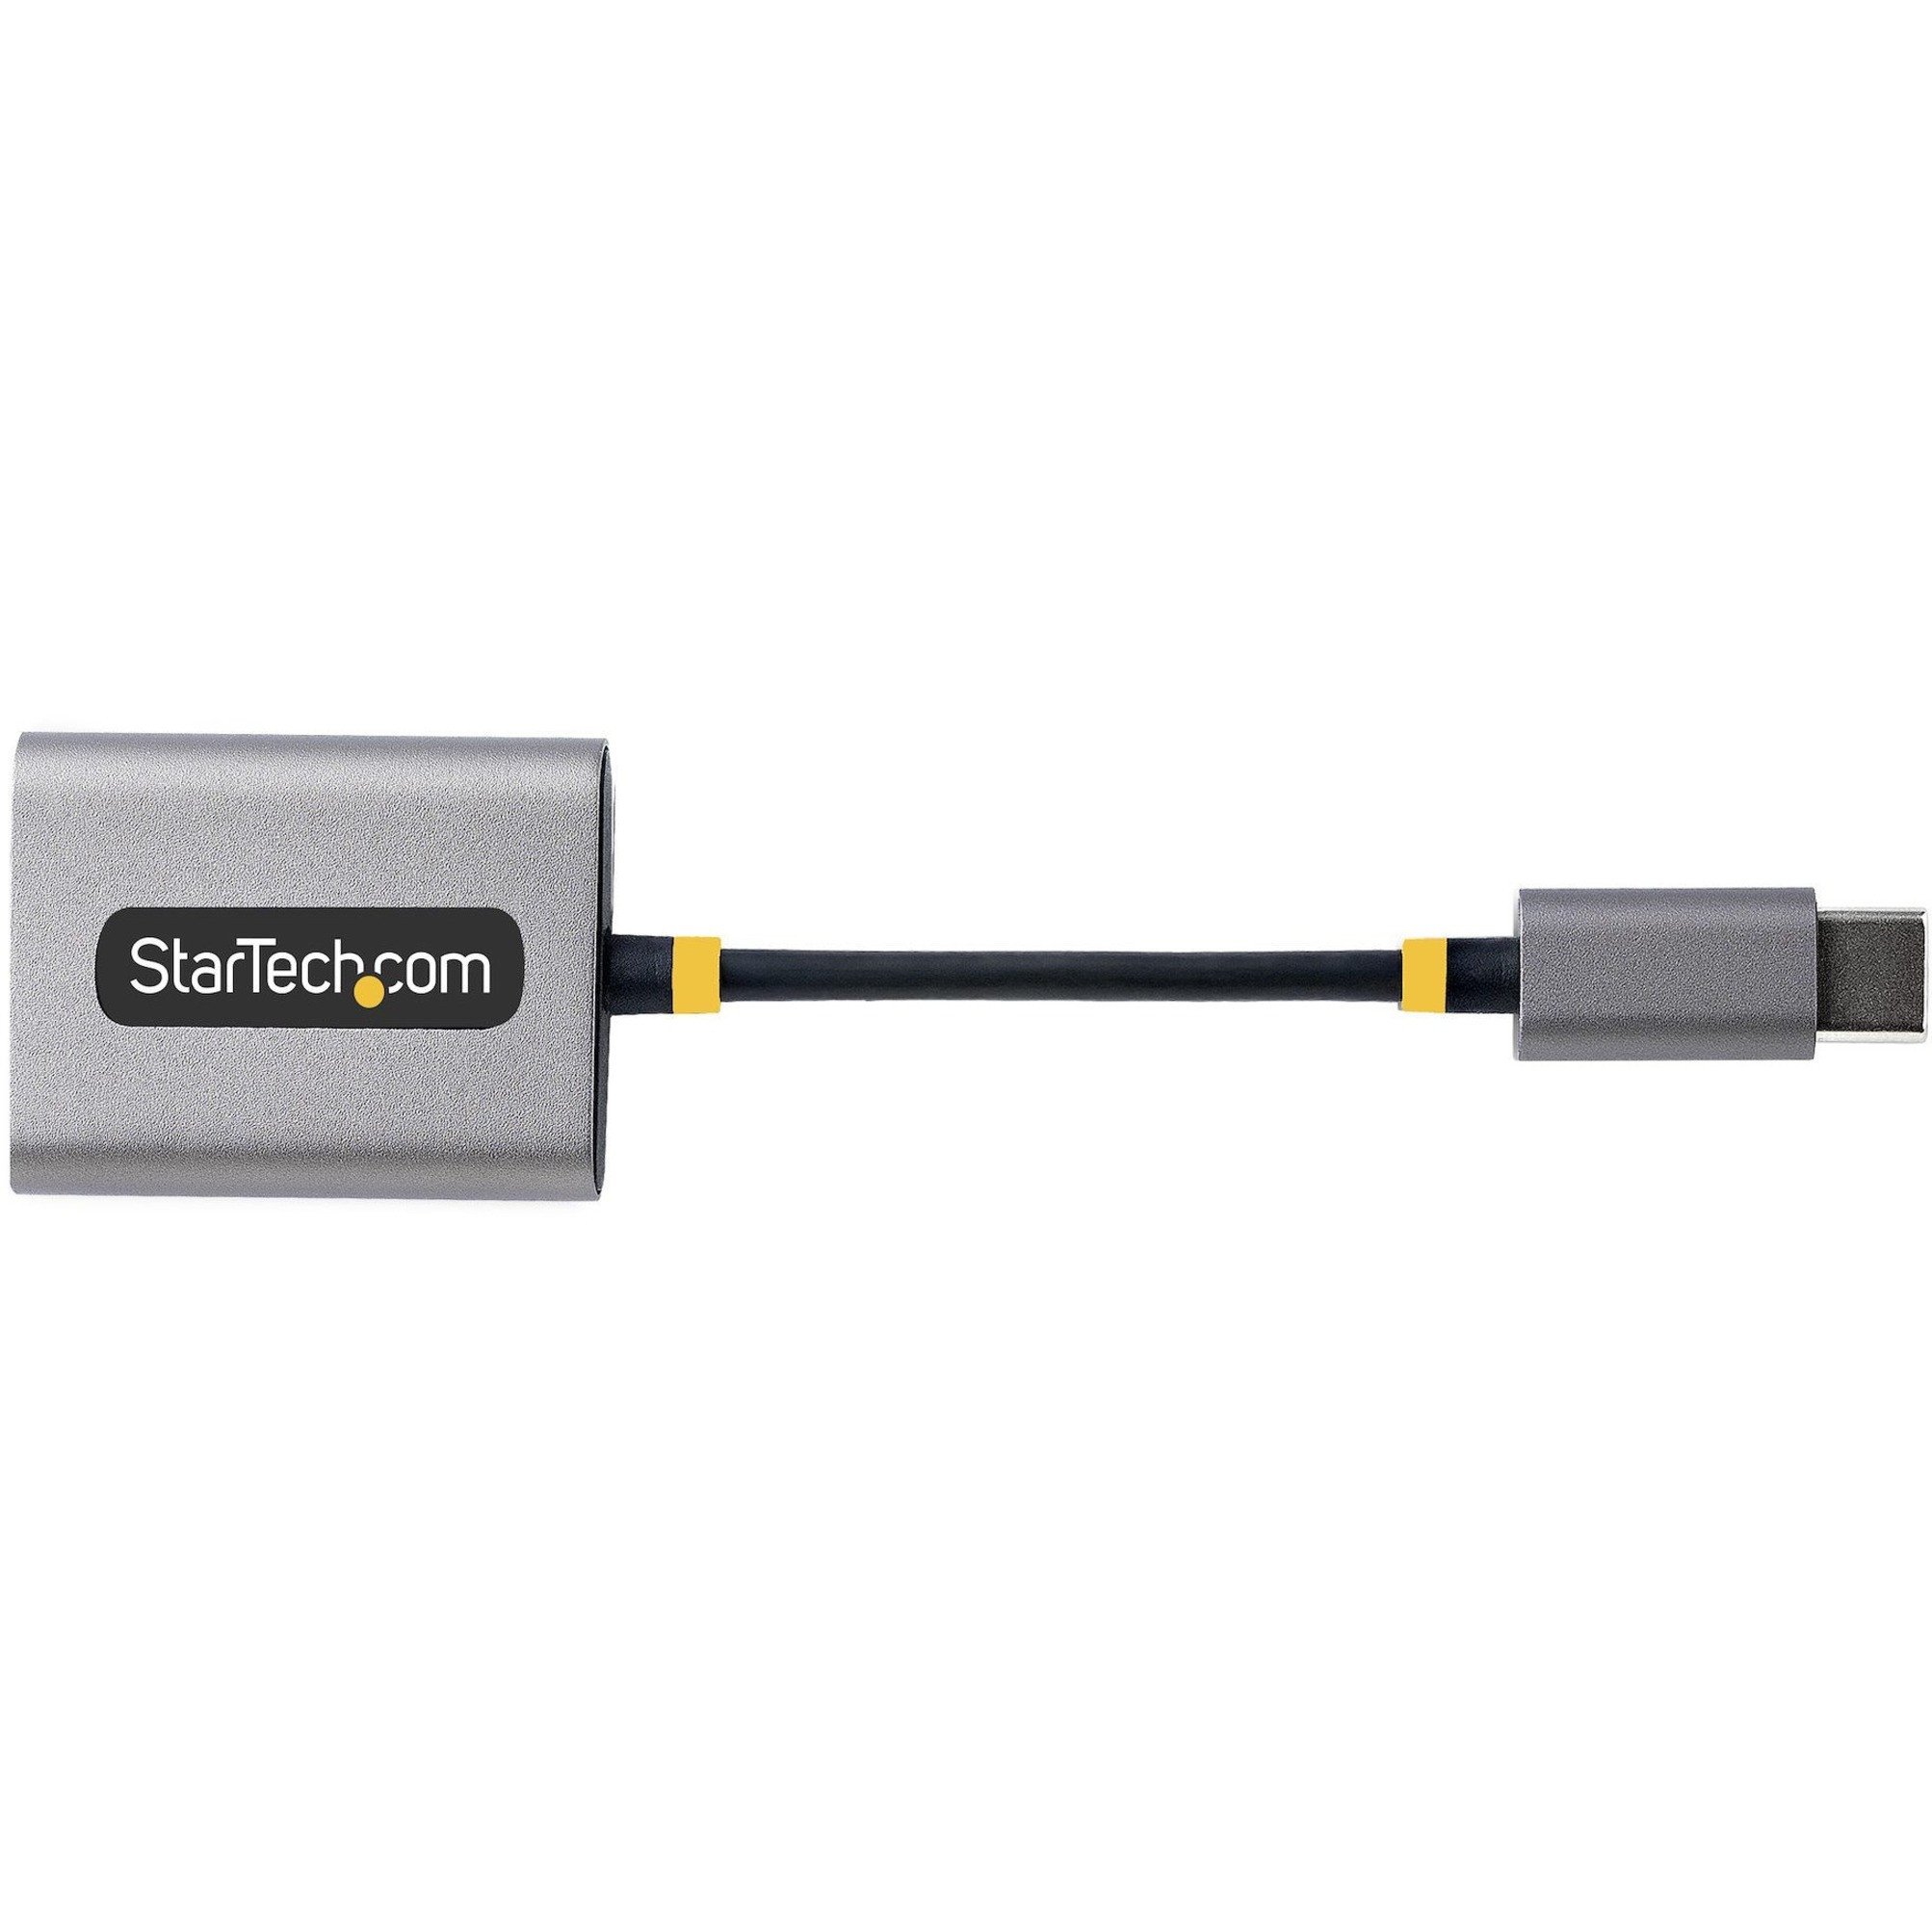 StarTech Headset Adapter